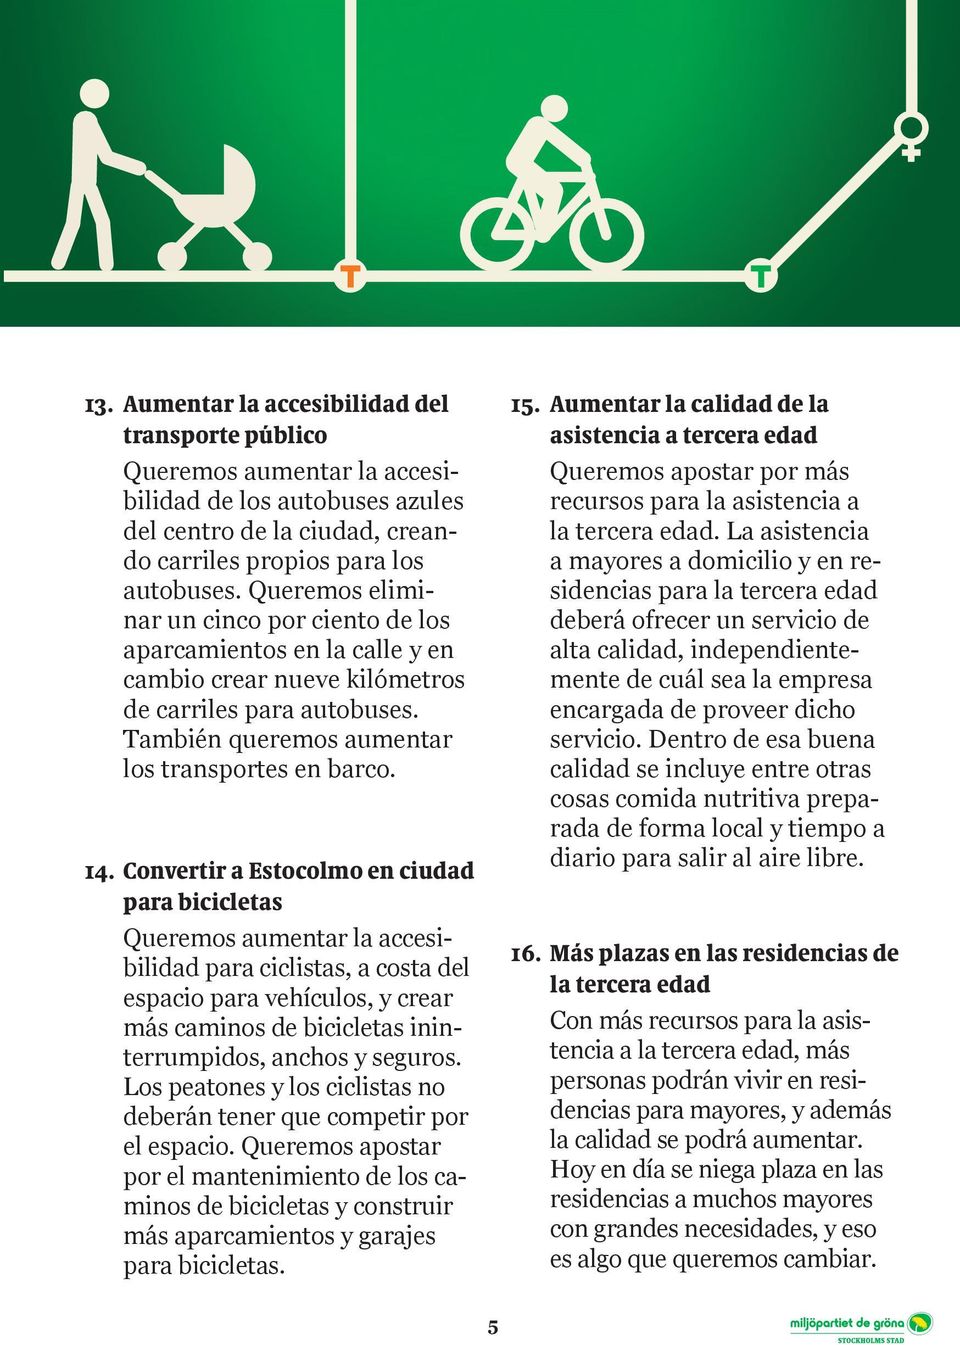 Convertir a Estocolmo en ciudad para bicicletas Queremos aumentar la accesibilidad para ciclistas, a costa del espacio para vehículos, y crear más caminos de bicicletas ininterrumpidos, anchos y